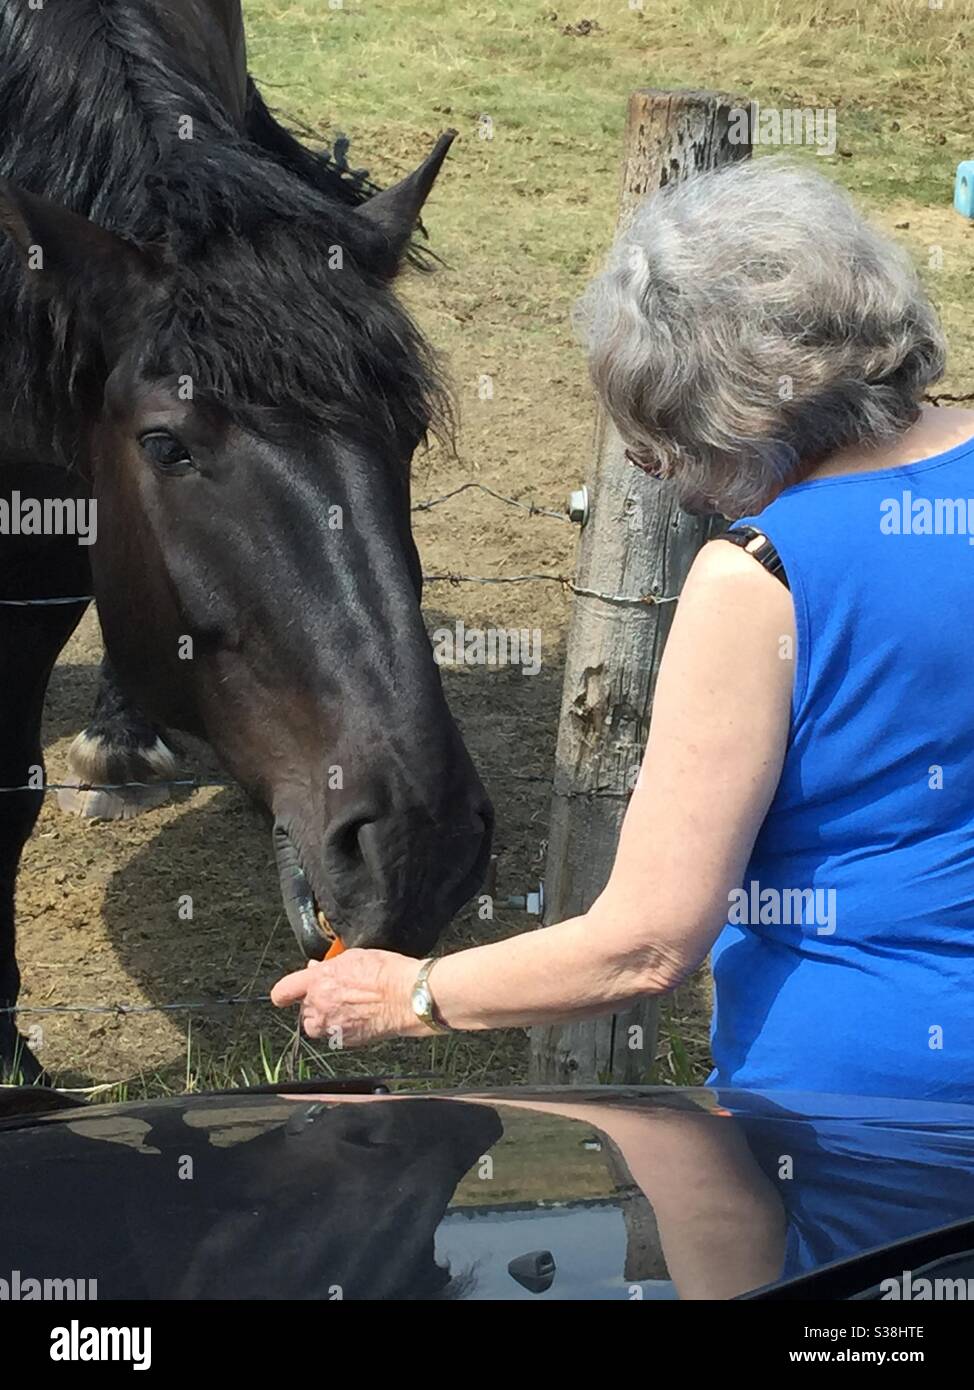 Mujer dando un caballo unas zanahorias, amable, gentilmente gigante, Percheron Foto de stock